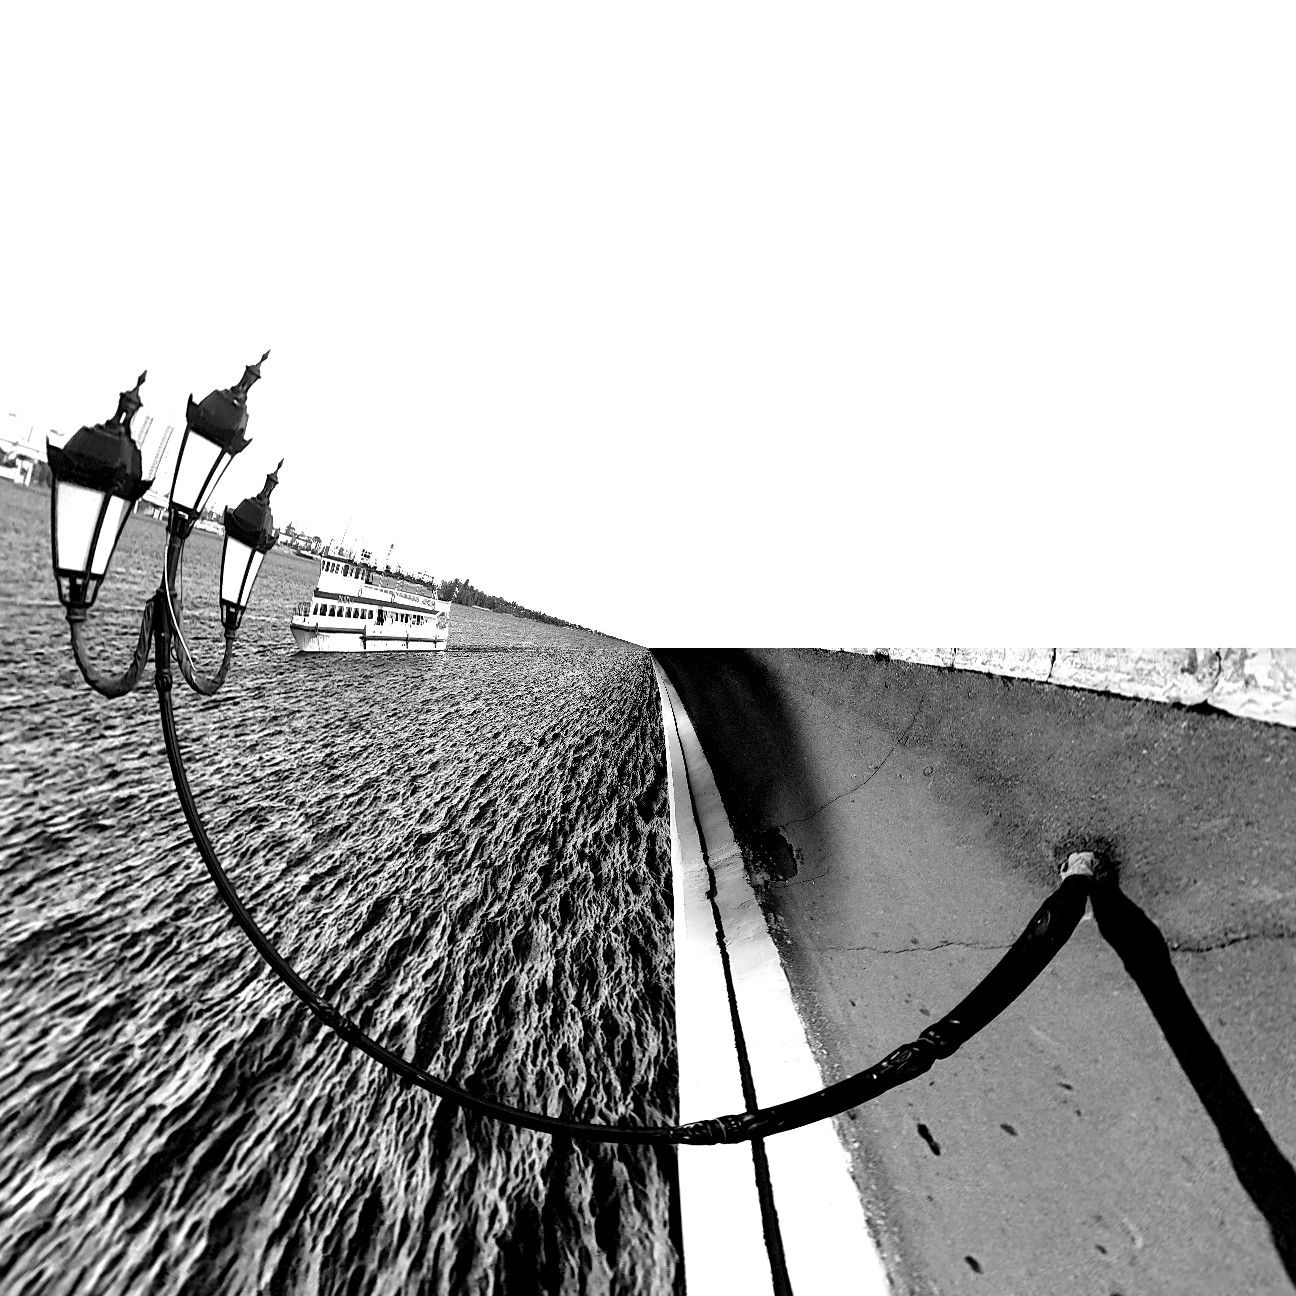 набережная, саратов, фонарь, пароход, абстракция, ч/б, черное&белок, black&white, b/w, abstract , abstraction, Karina Yakovleva